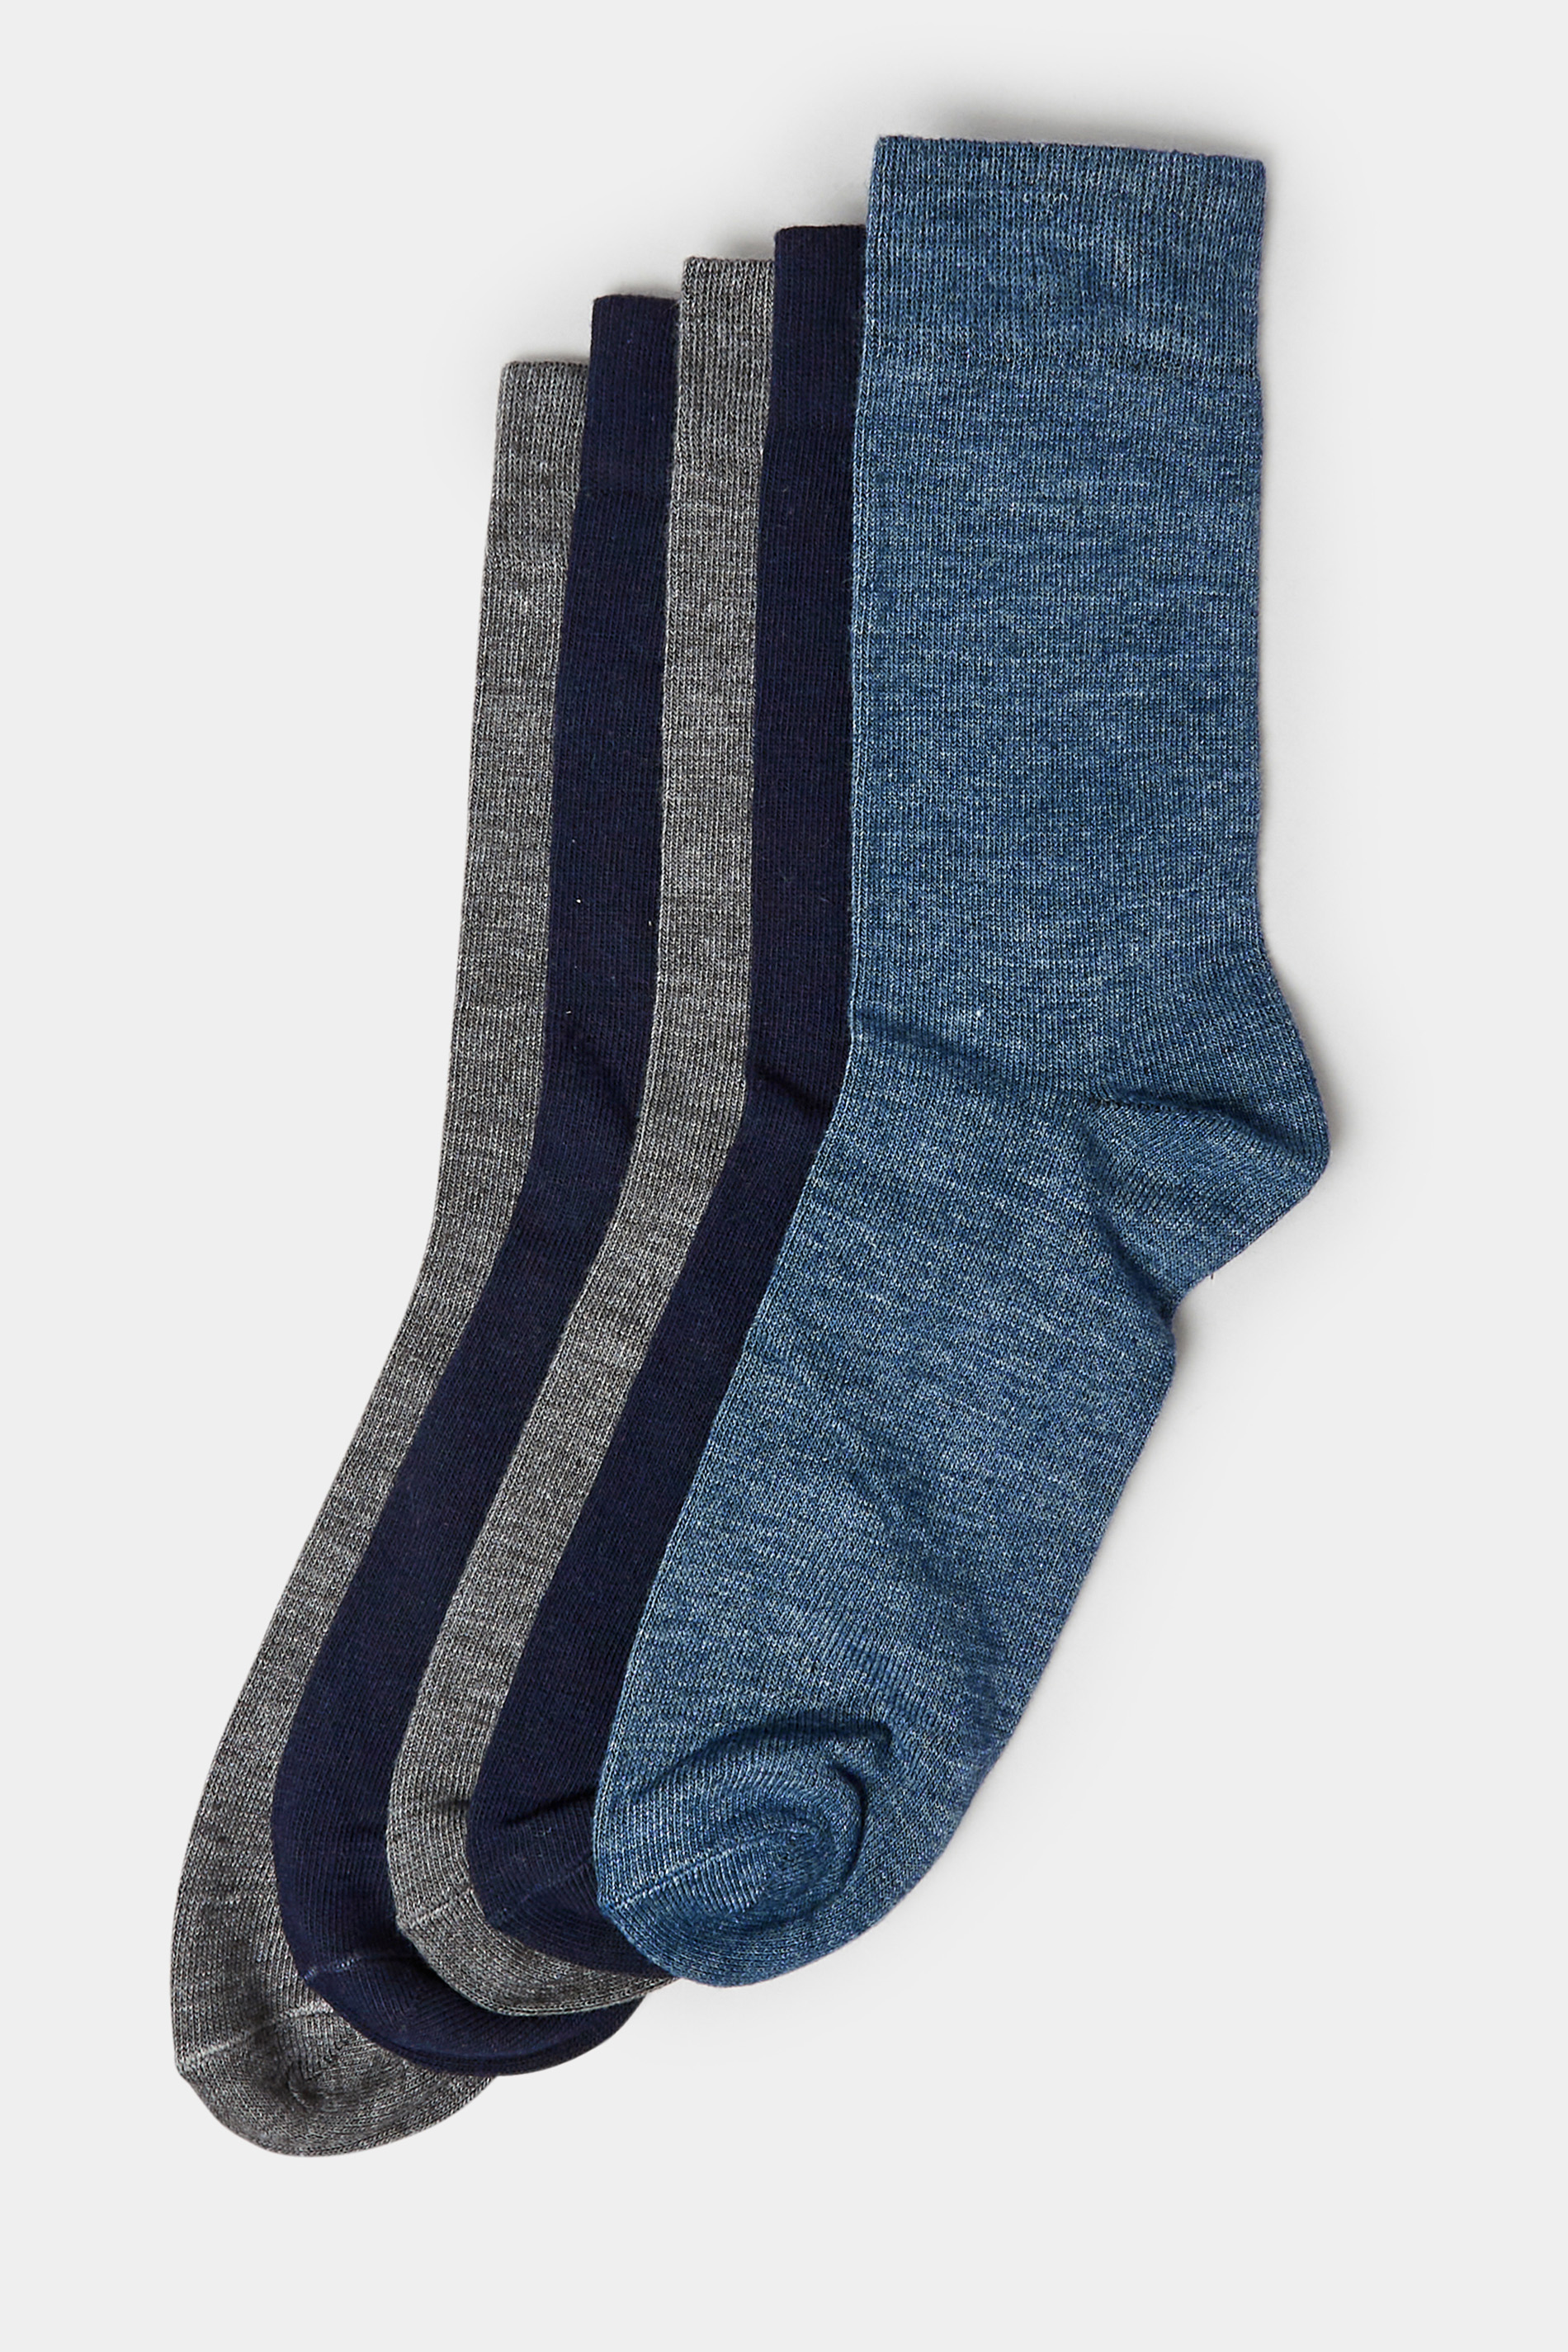 BadRhino Blue & Grey 5 Pack Ankle Socks | BadRhino 3